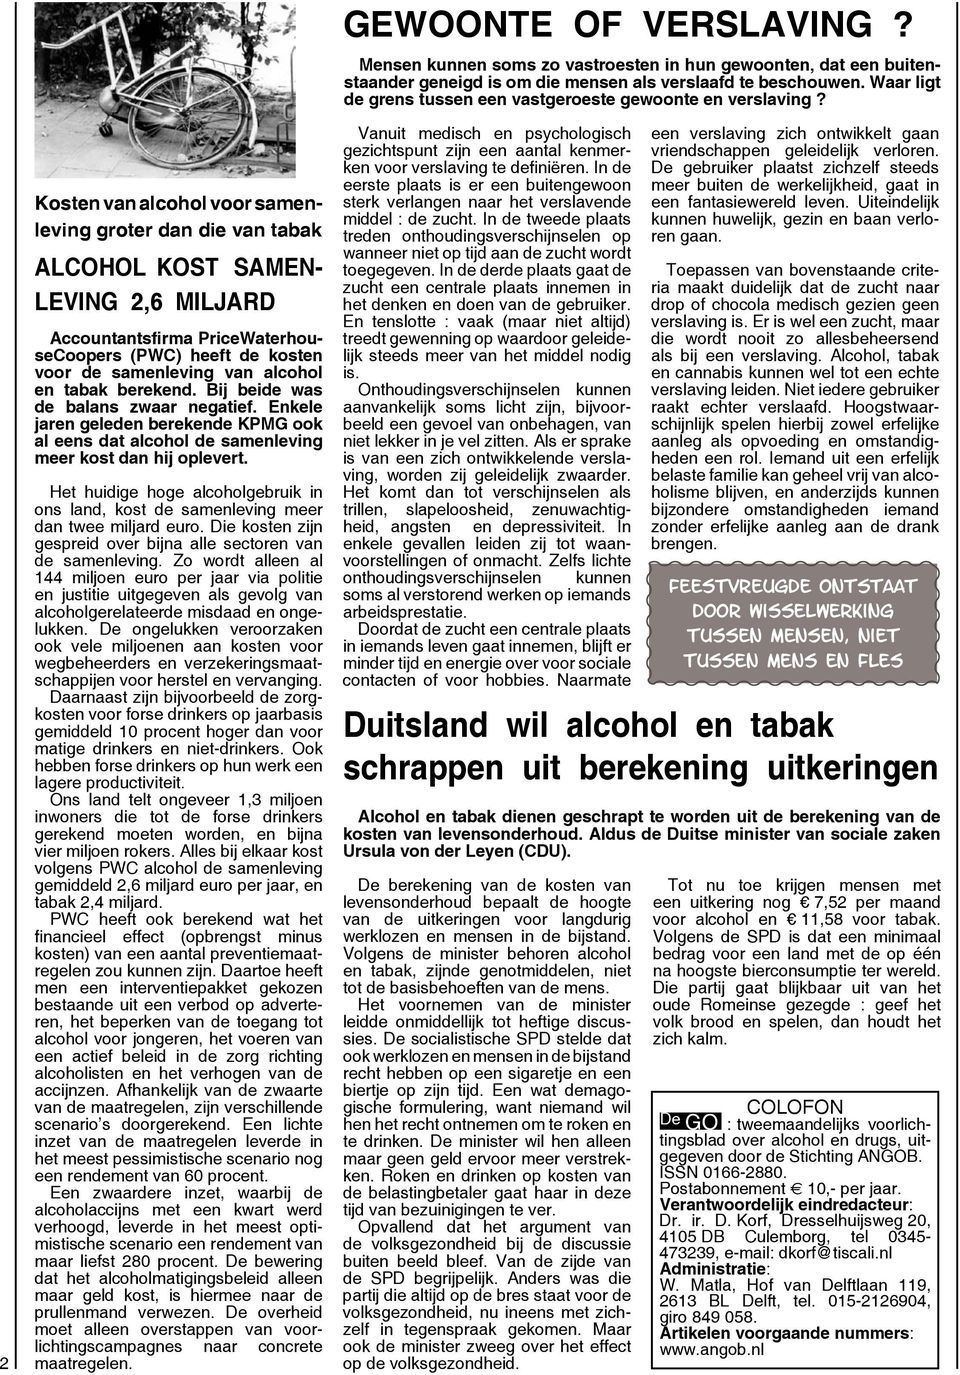 Het huidige hoge alcoholgebruik in ons land, kost de samenleving meer dan twee miljard euro. Die kosten zijn gespreid over bijna alle sectoren van de samenleving.